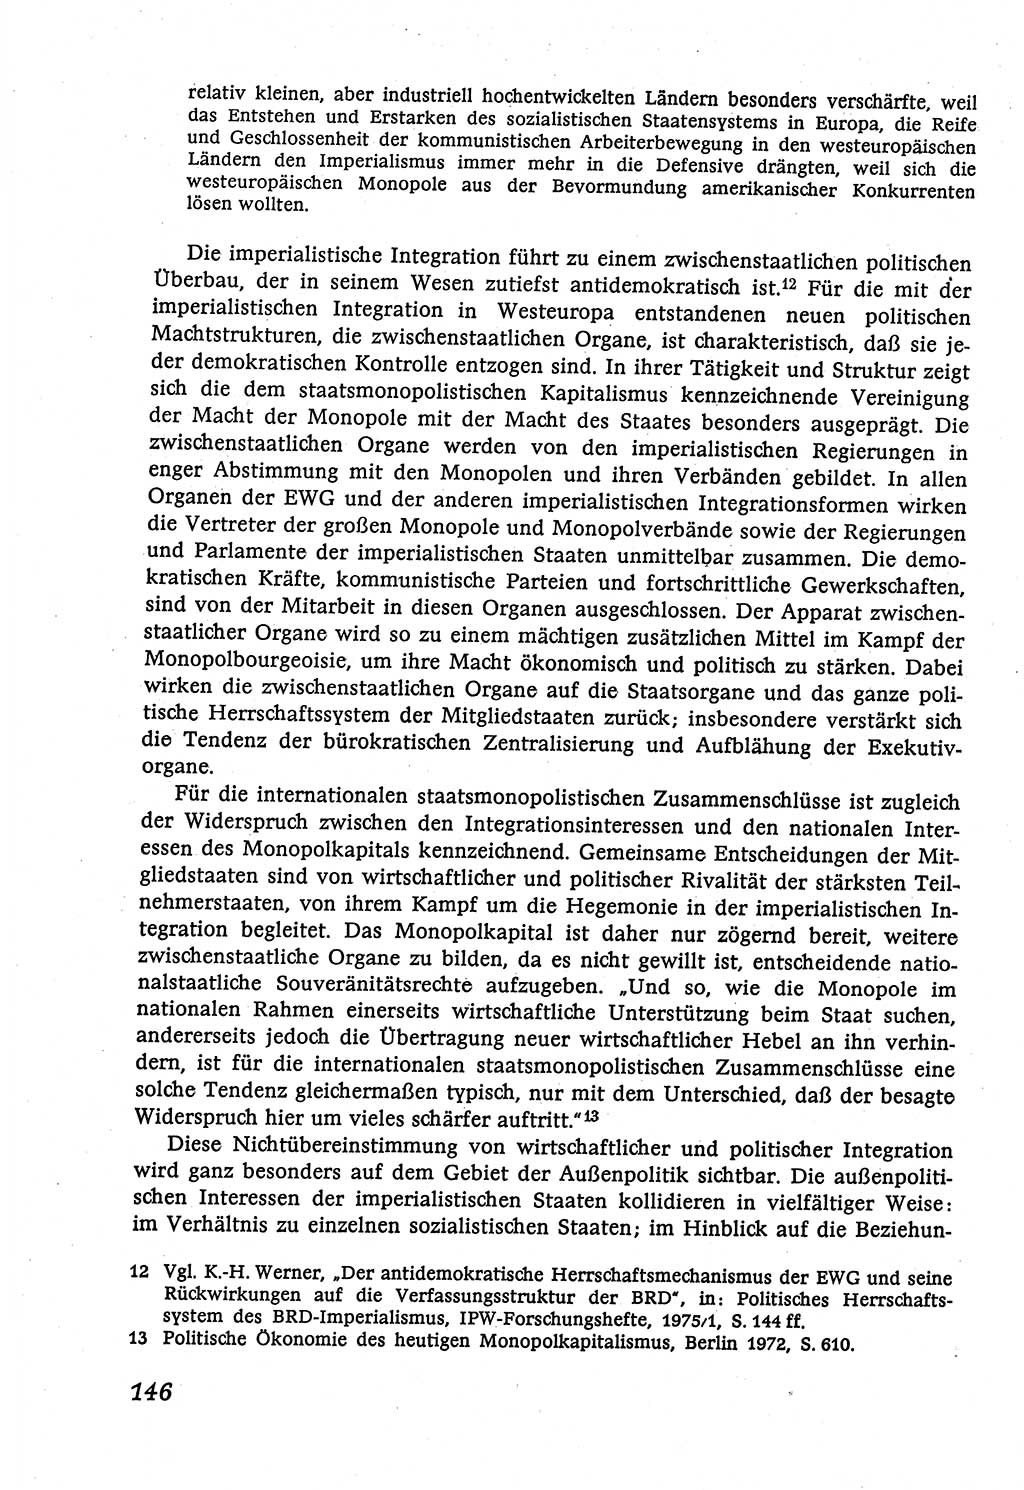 Marxistisch-leninistische (ML) Staats- und Rechtstheorie [Deutsche Demokratische Republik (DDR)], Lehrbuch 1980, Seite 146 (ML St.-R.-Th. DDR Lb. 1980, S. 146)